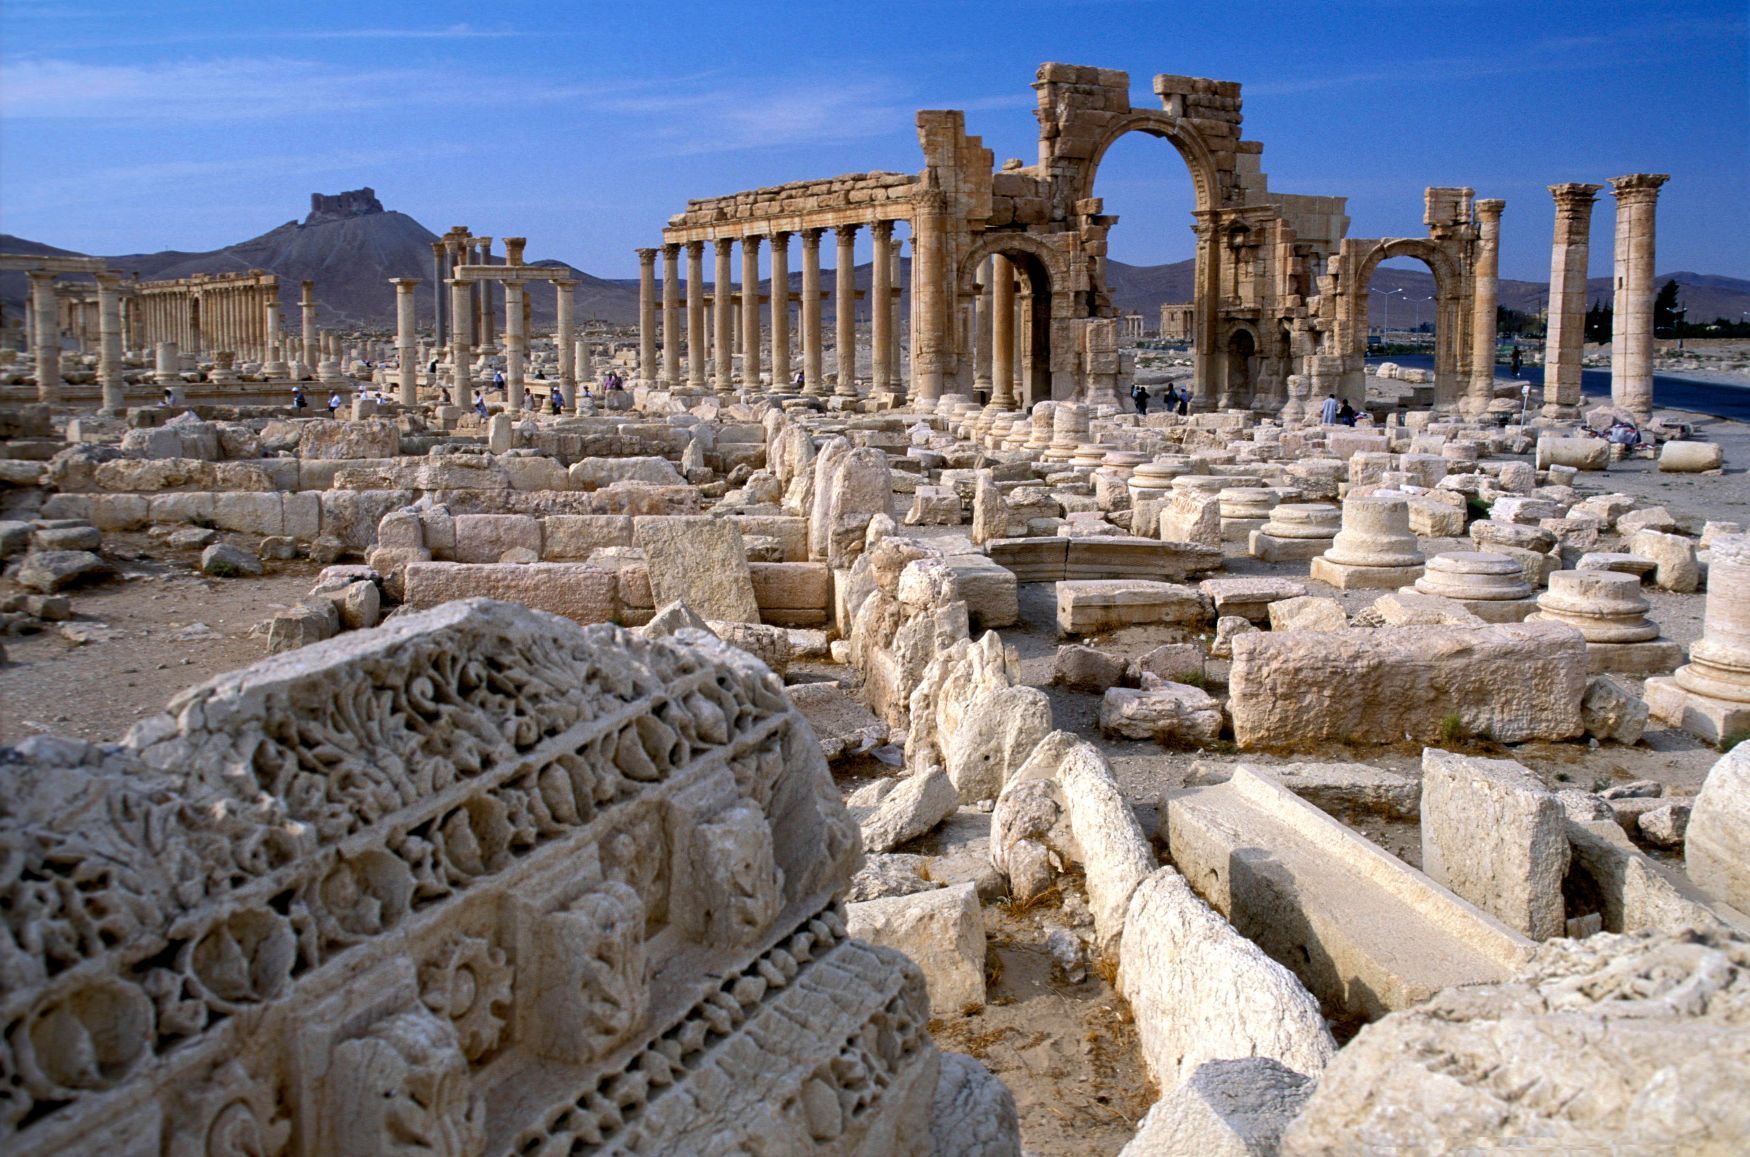 Historické město Palmýra v Sýrii - vítězný oblouk